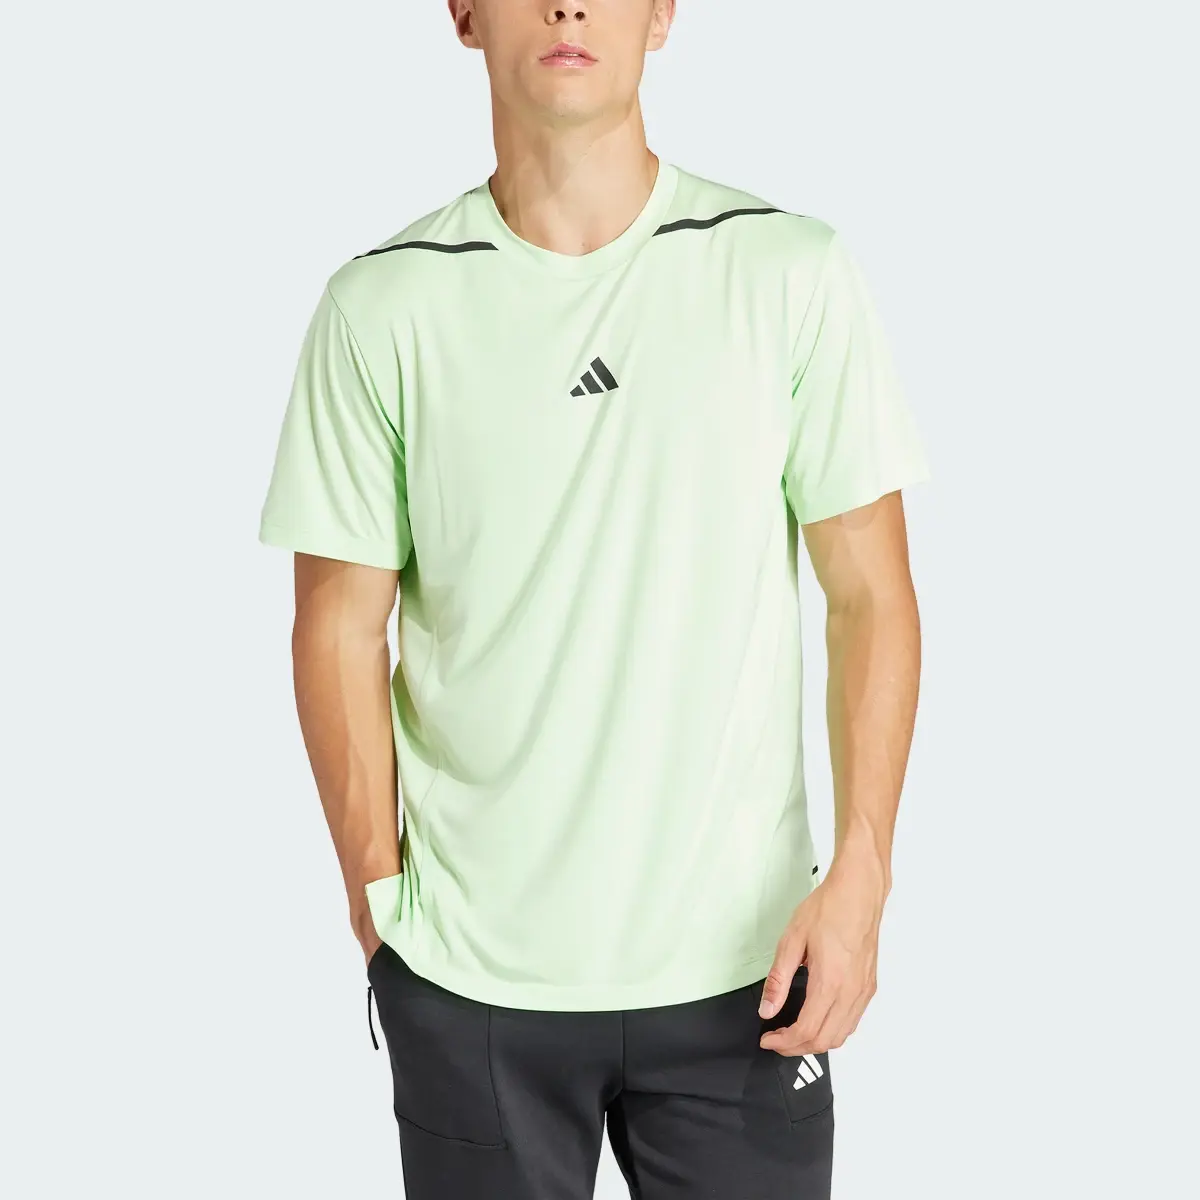 Adidas Camiseta Designed for Training Adistrong Workout. 1